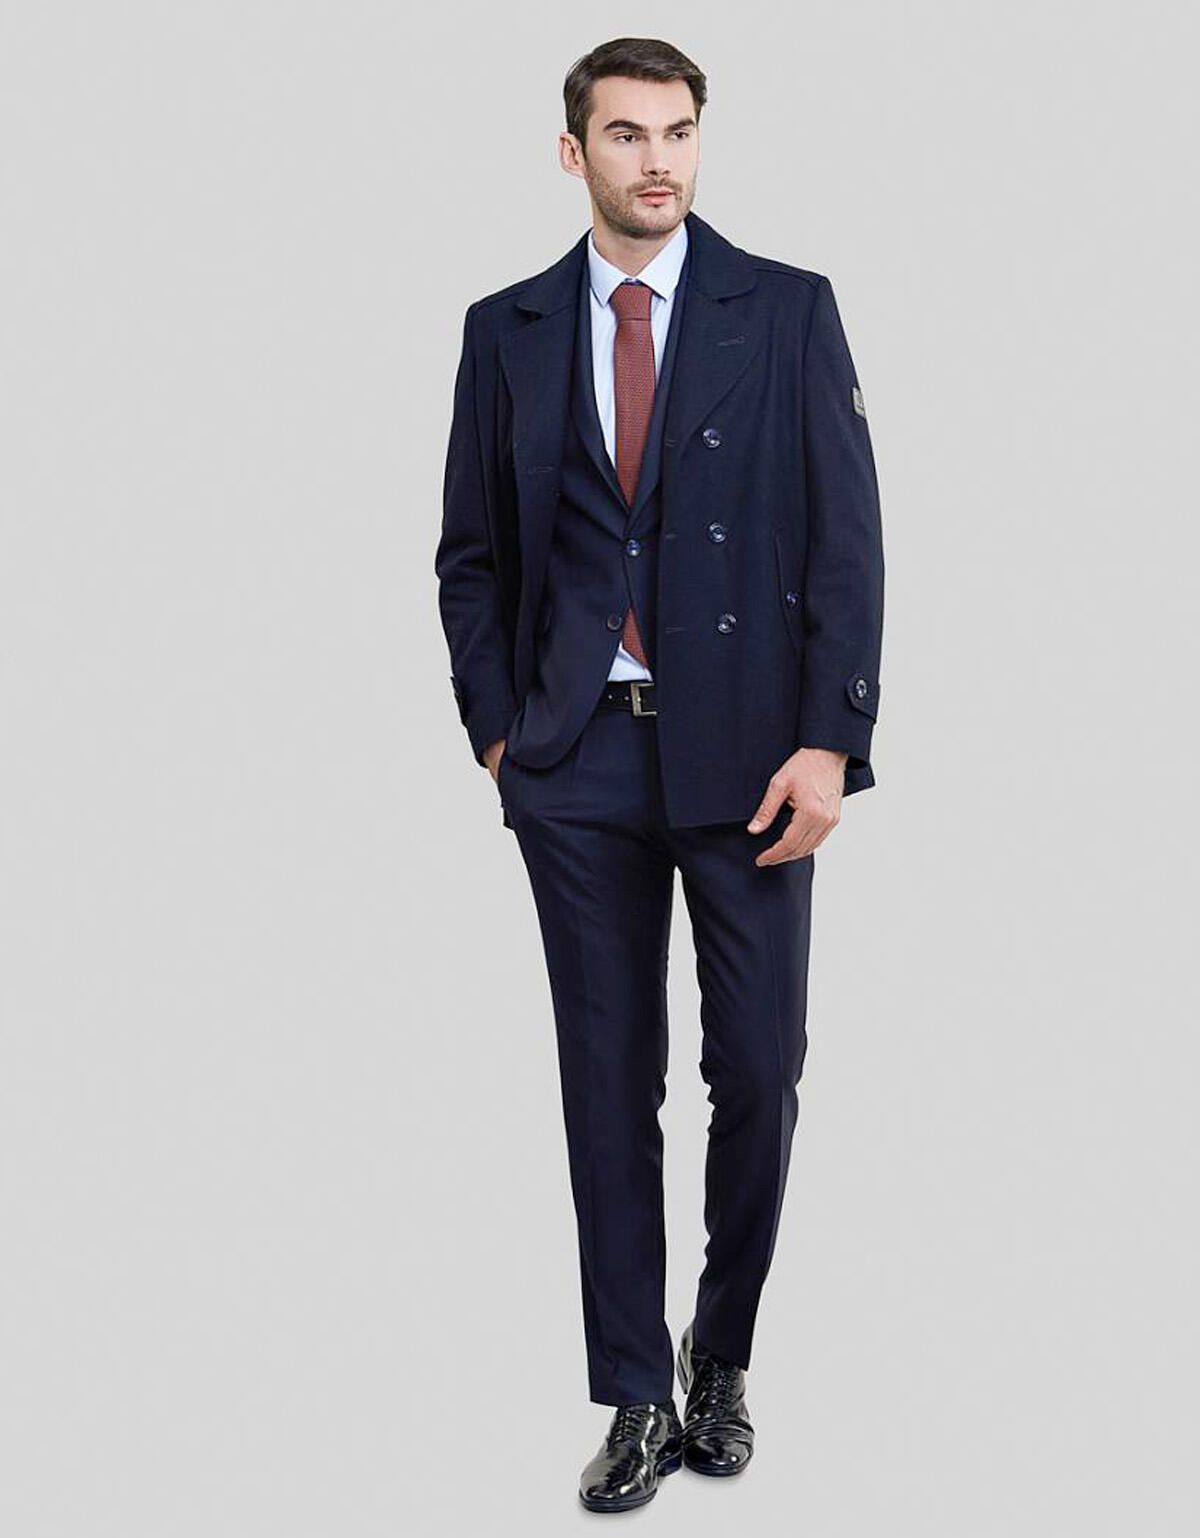 Пальто двубортное без подклада, Classic fit | купить в интернет-магазине Olymp-Men